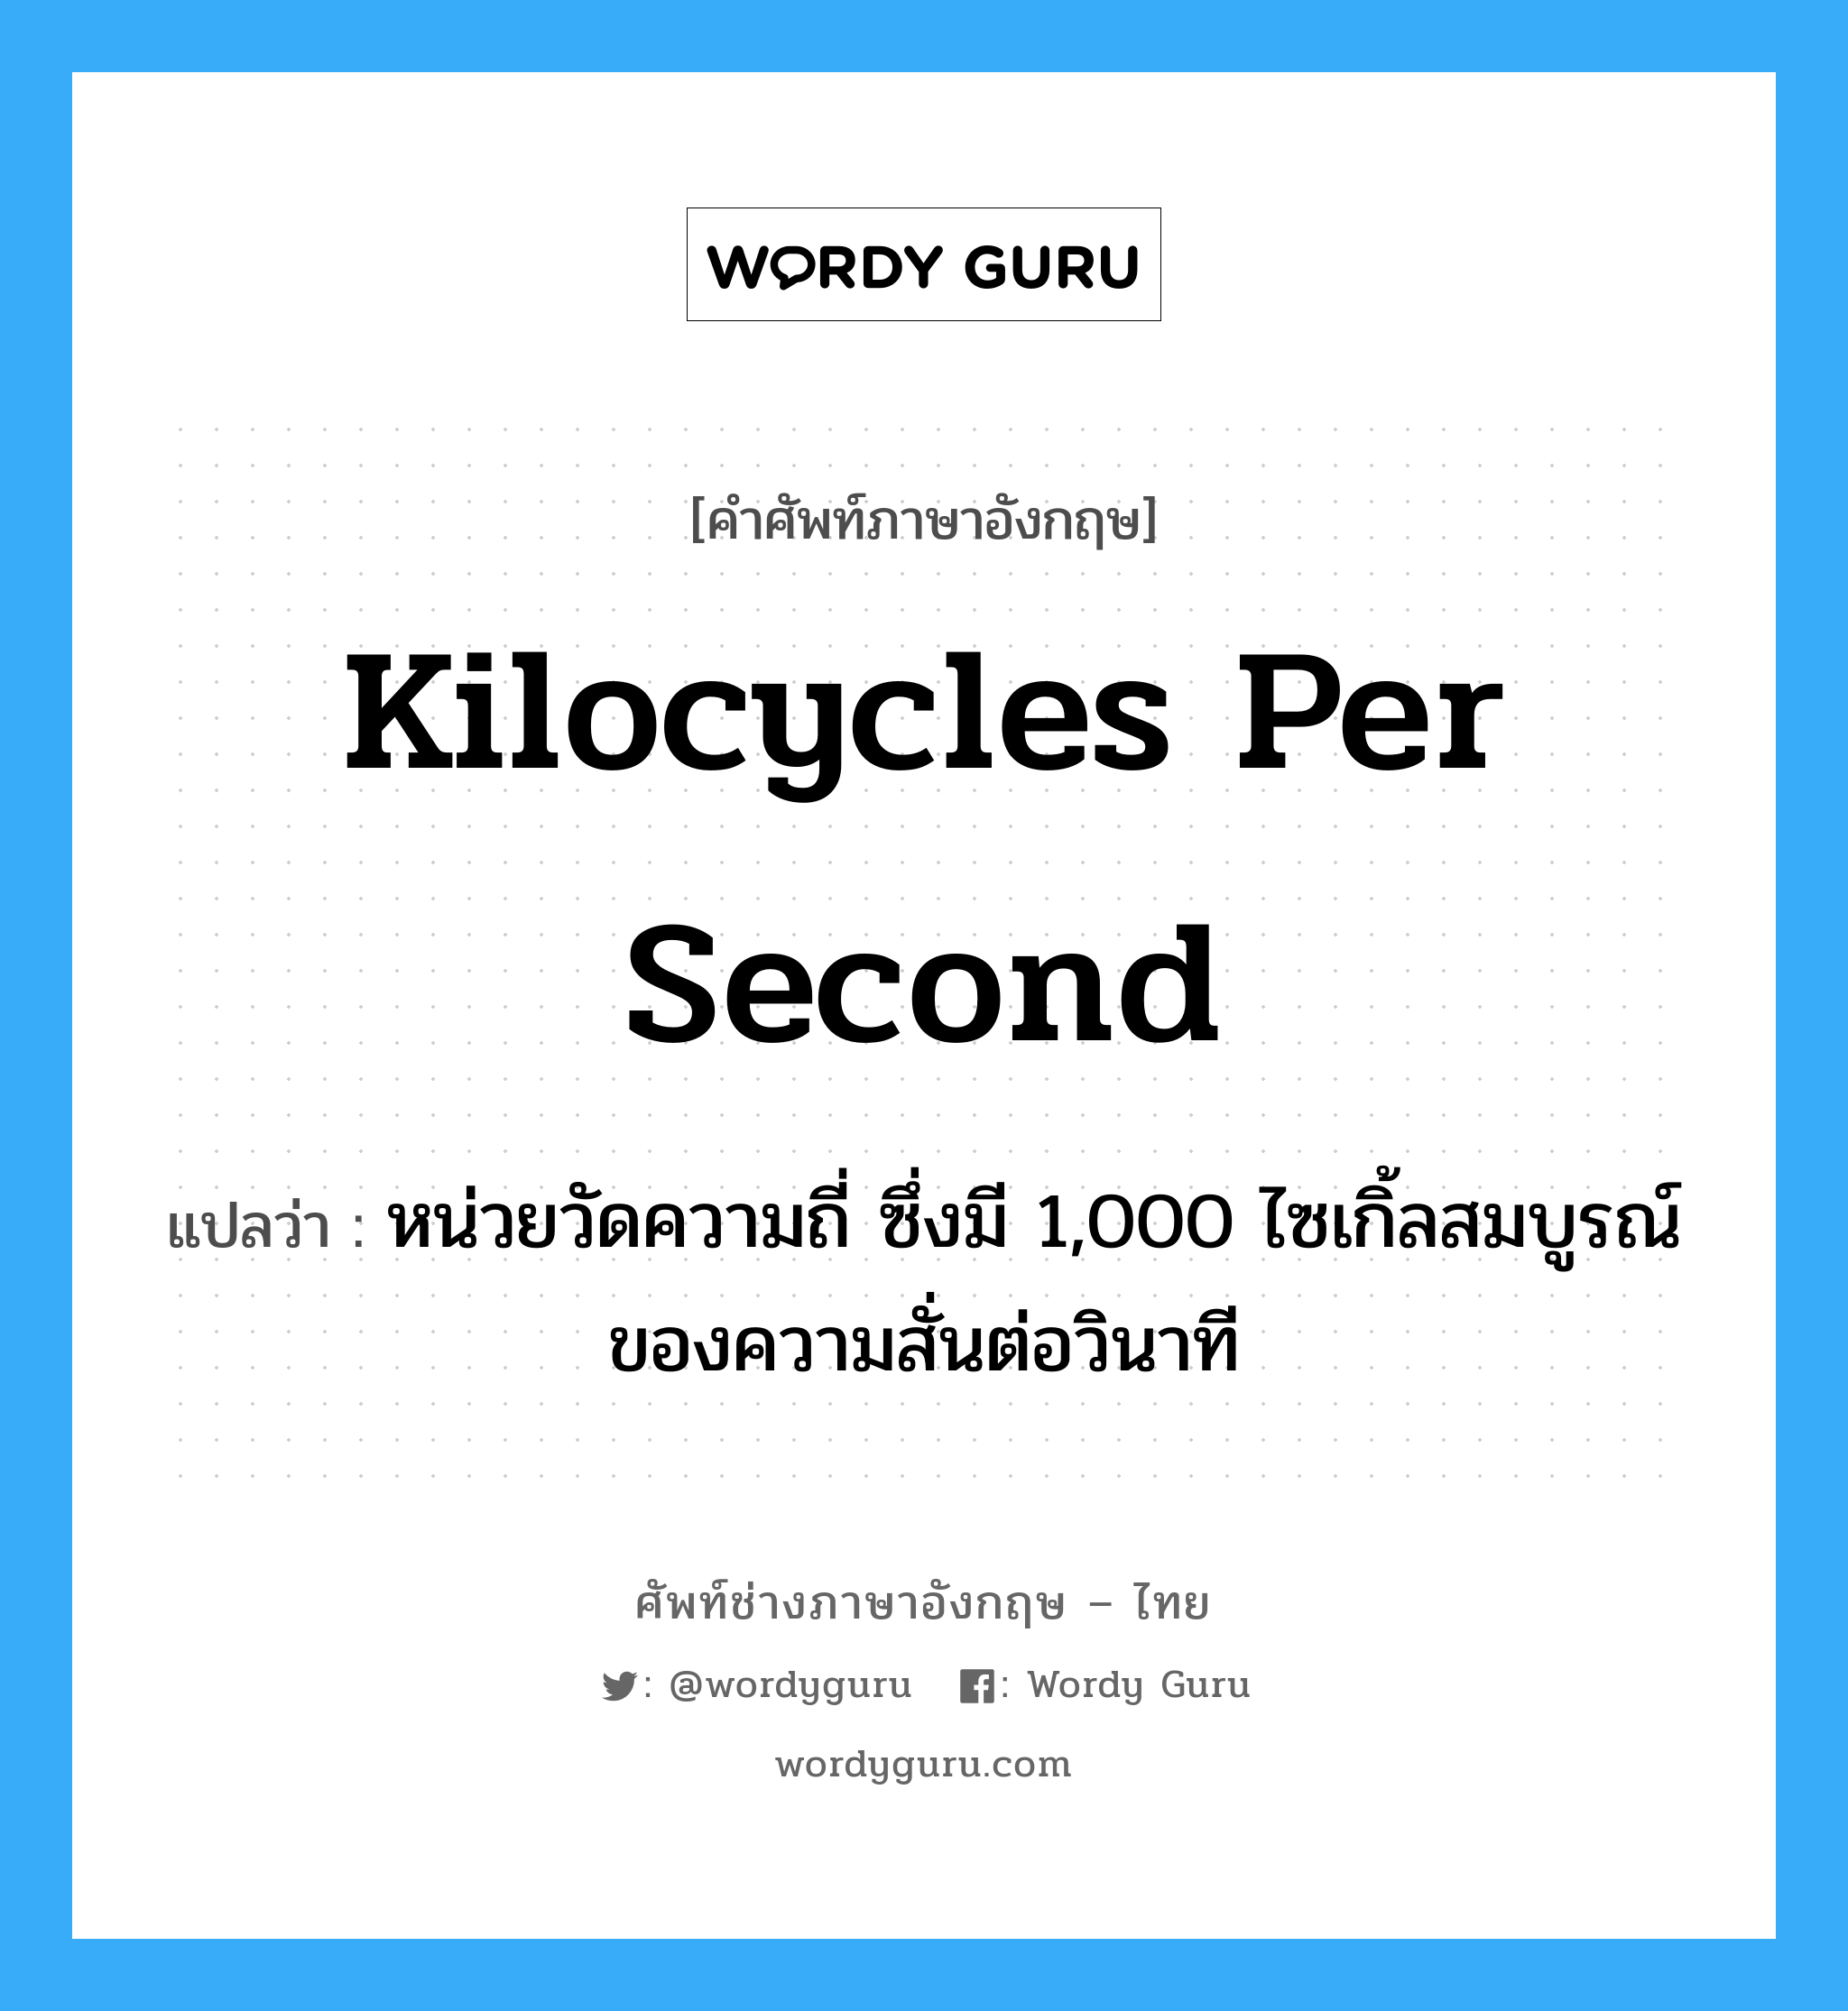 kilocycles per second แปลว่า?, คำศัพท์ช่างภาษาอังกฤษ - ไทย kilocycles per second คำศัพท์ภาษาอังกฤษ kilocycles per second แปลว่า หน่วยวัดความถี่ ซึ่งมี 1,000 ไซเกิ้ลสมบูรณ์ของความสั่นต่อวินาที